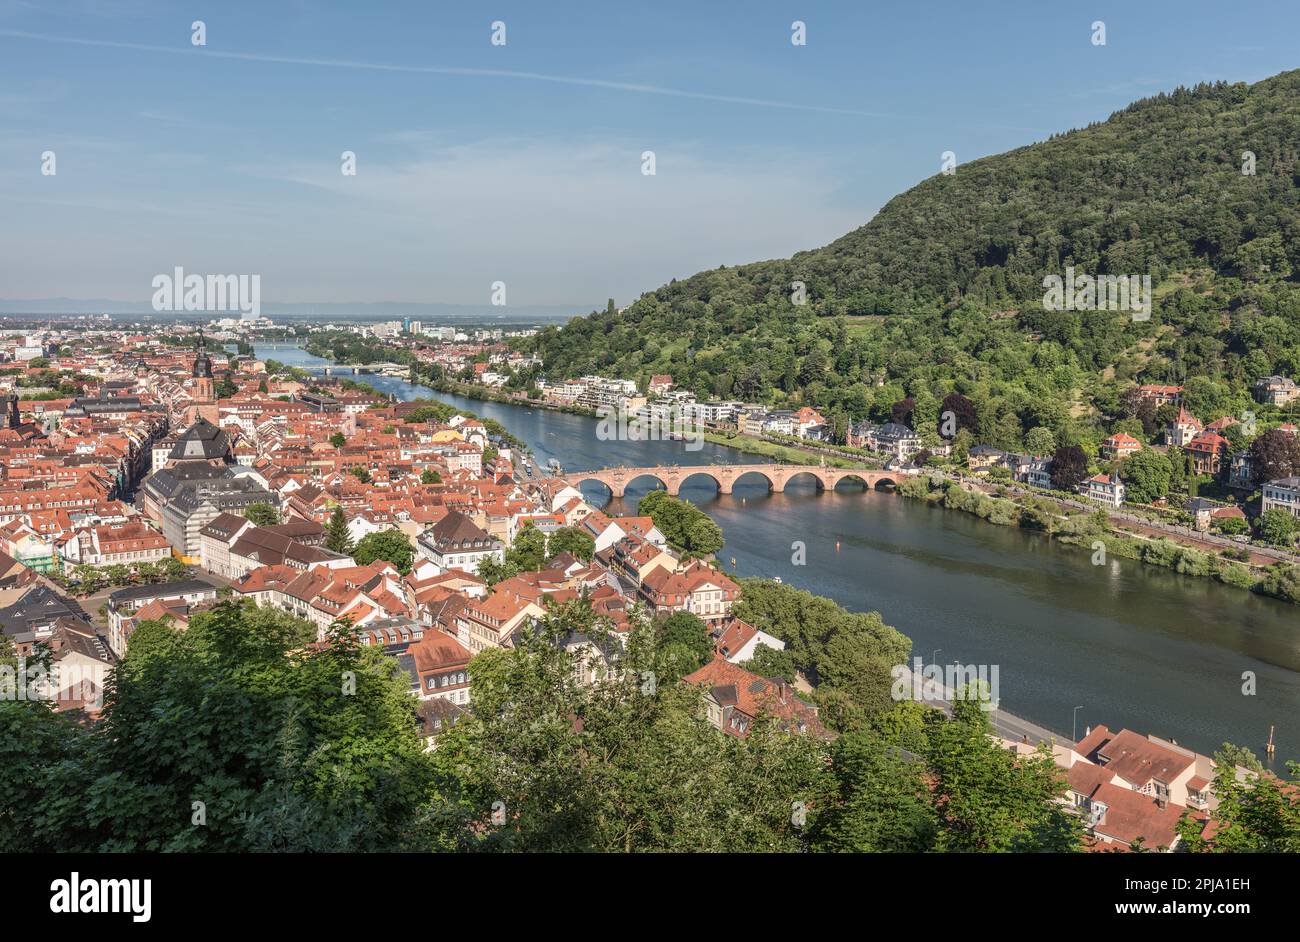 Storica città vecchia di Heidelberg sul fiume Neckar nella valle del Neckar con il Ponte Vecchio chiamato anche Ponte Karl Theodore. Heidelberg. Foto Stock